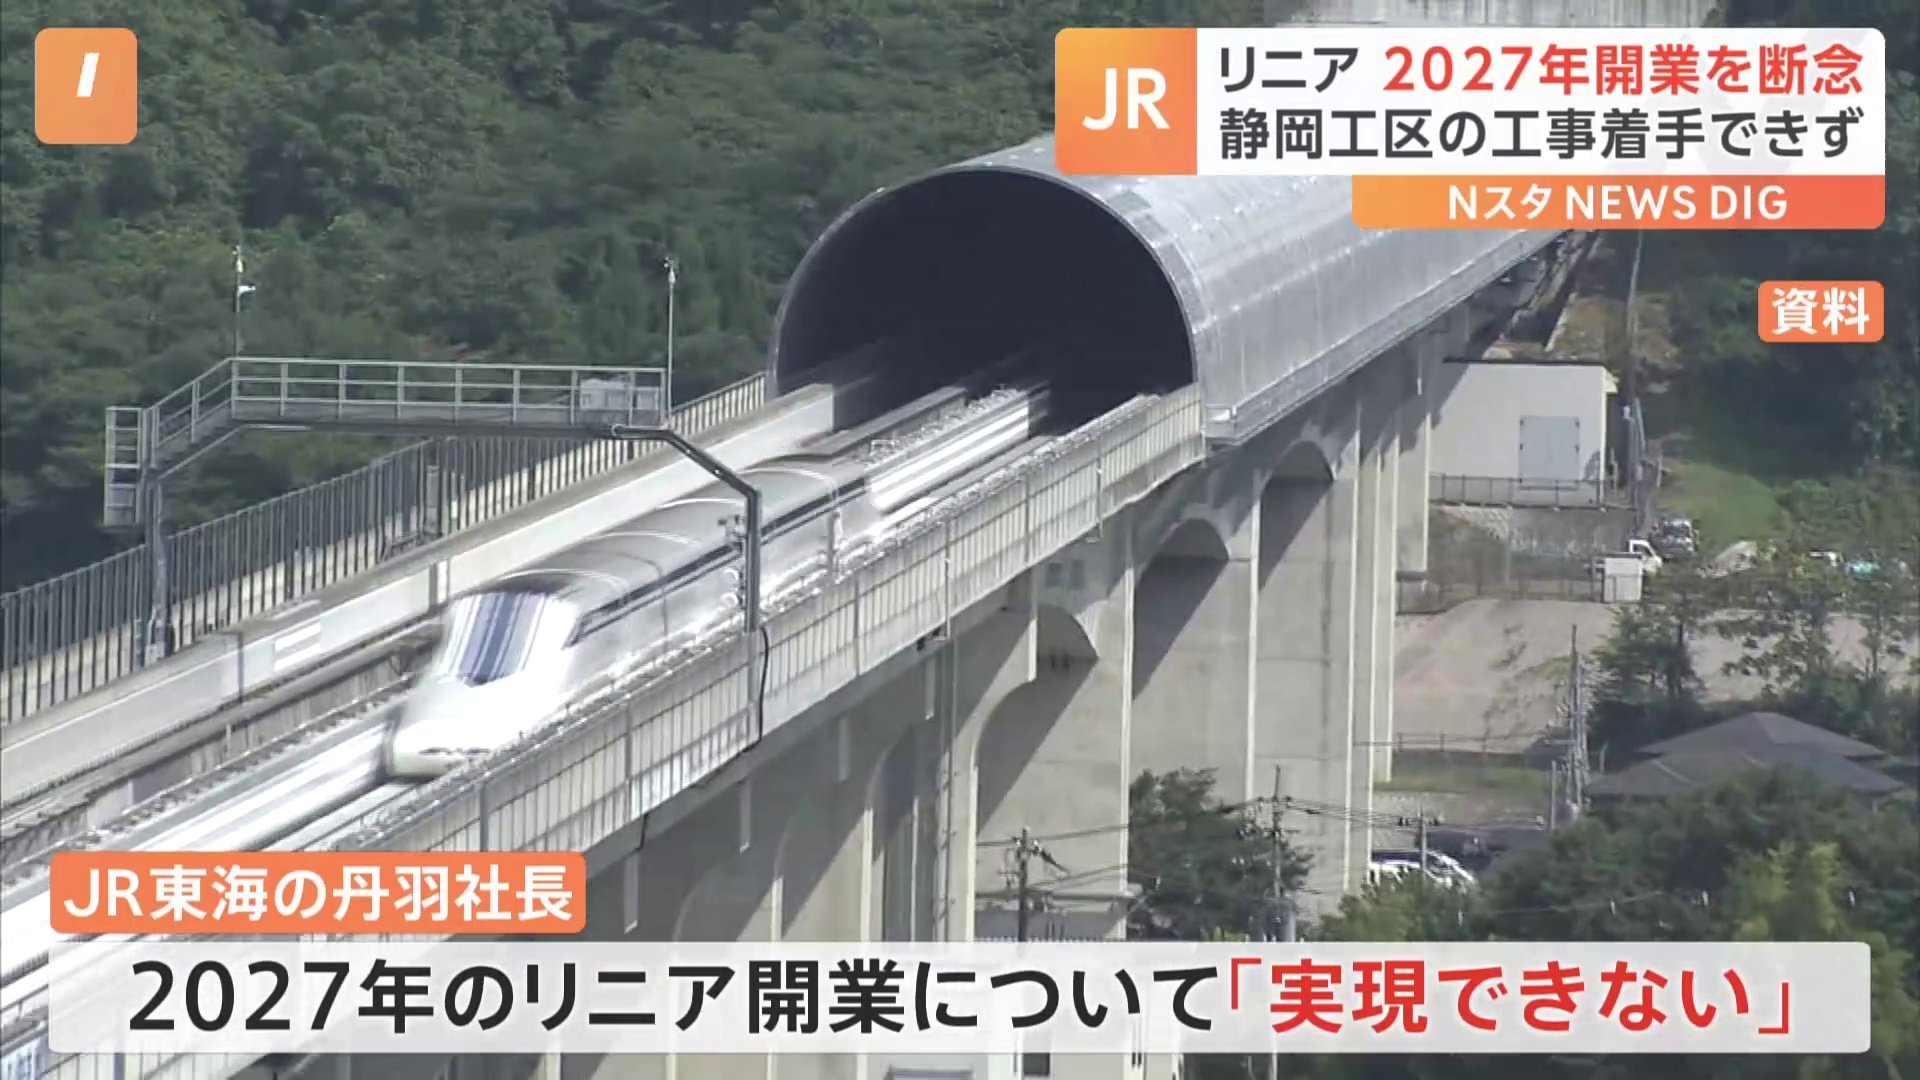 リニア中央新幹線の2027年開業を断念　JR東海の丹羽社長「実現できる状況になく」静岡工区の工事が6年4か月たっても未着工